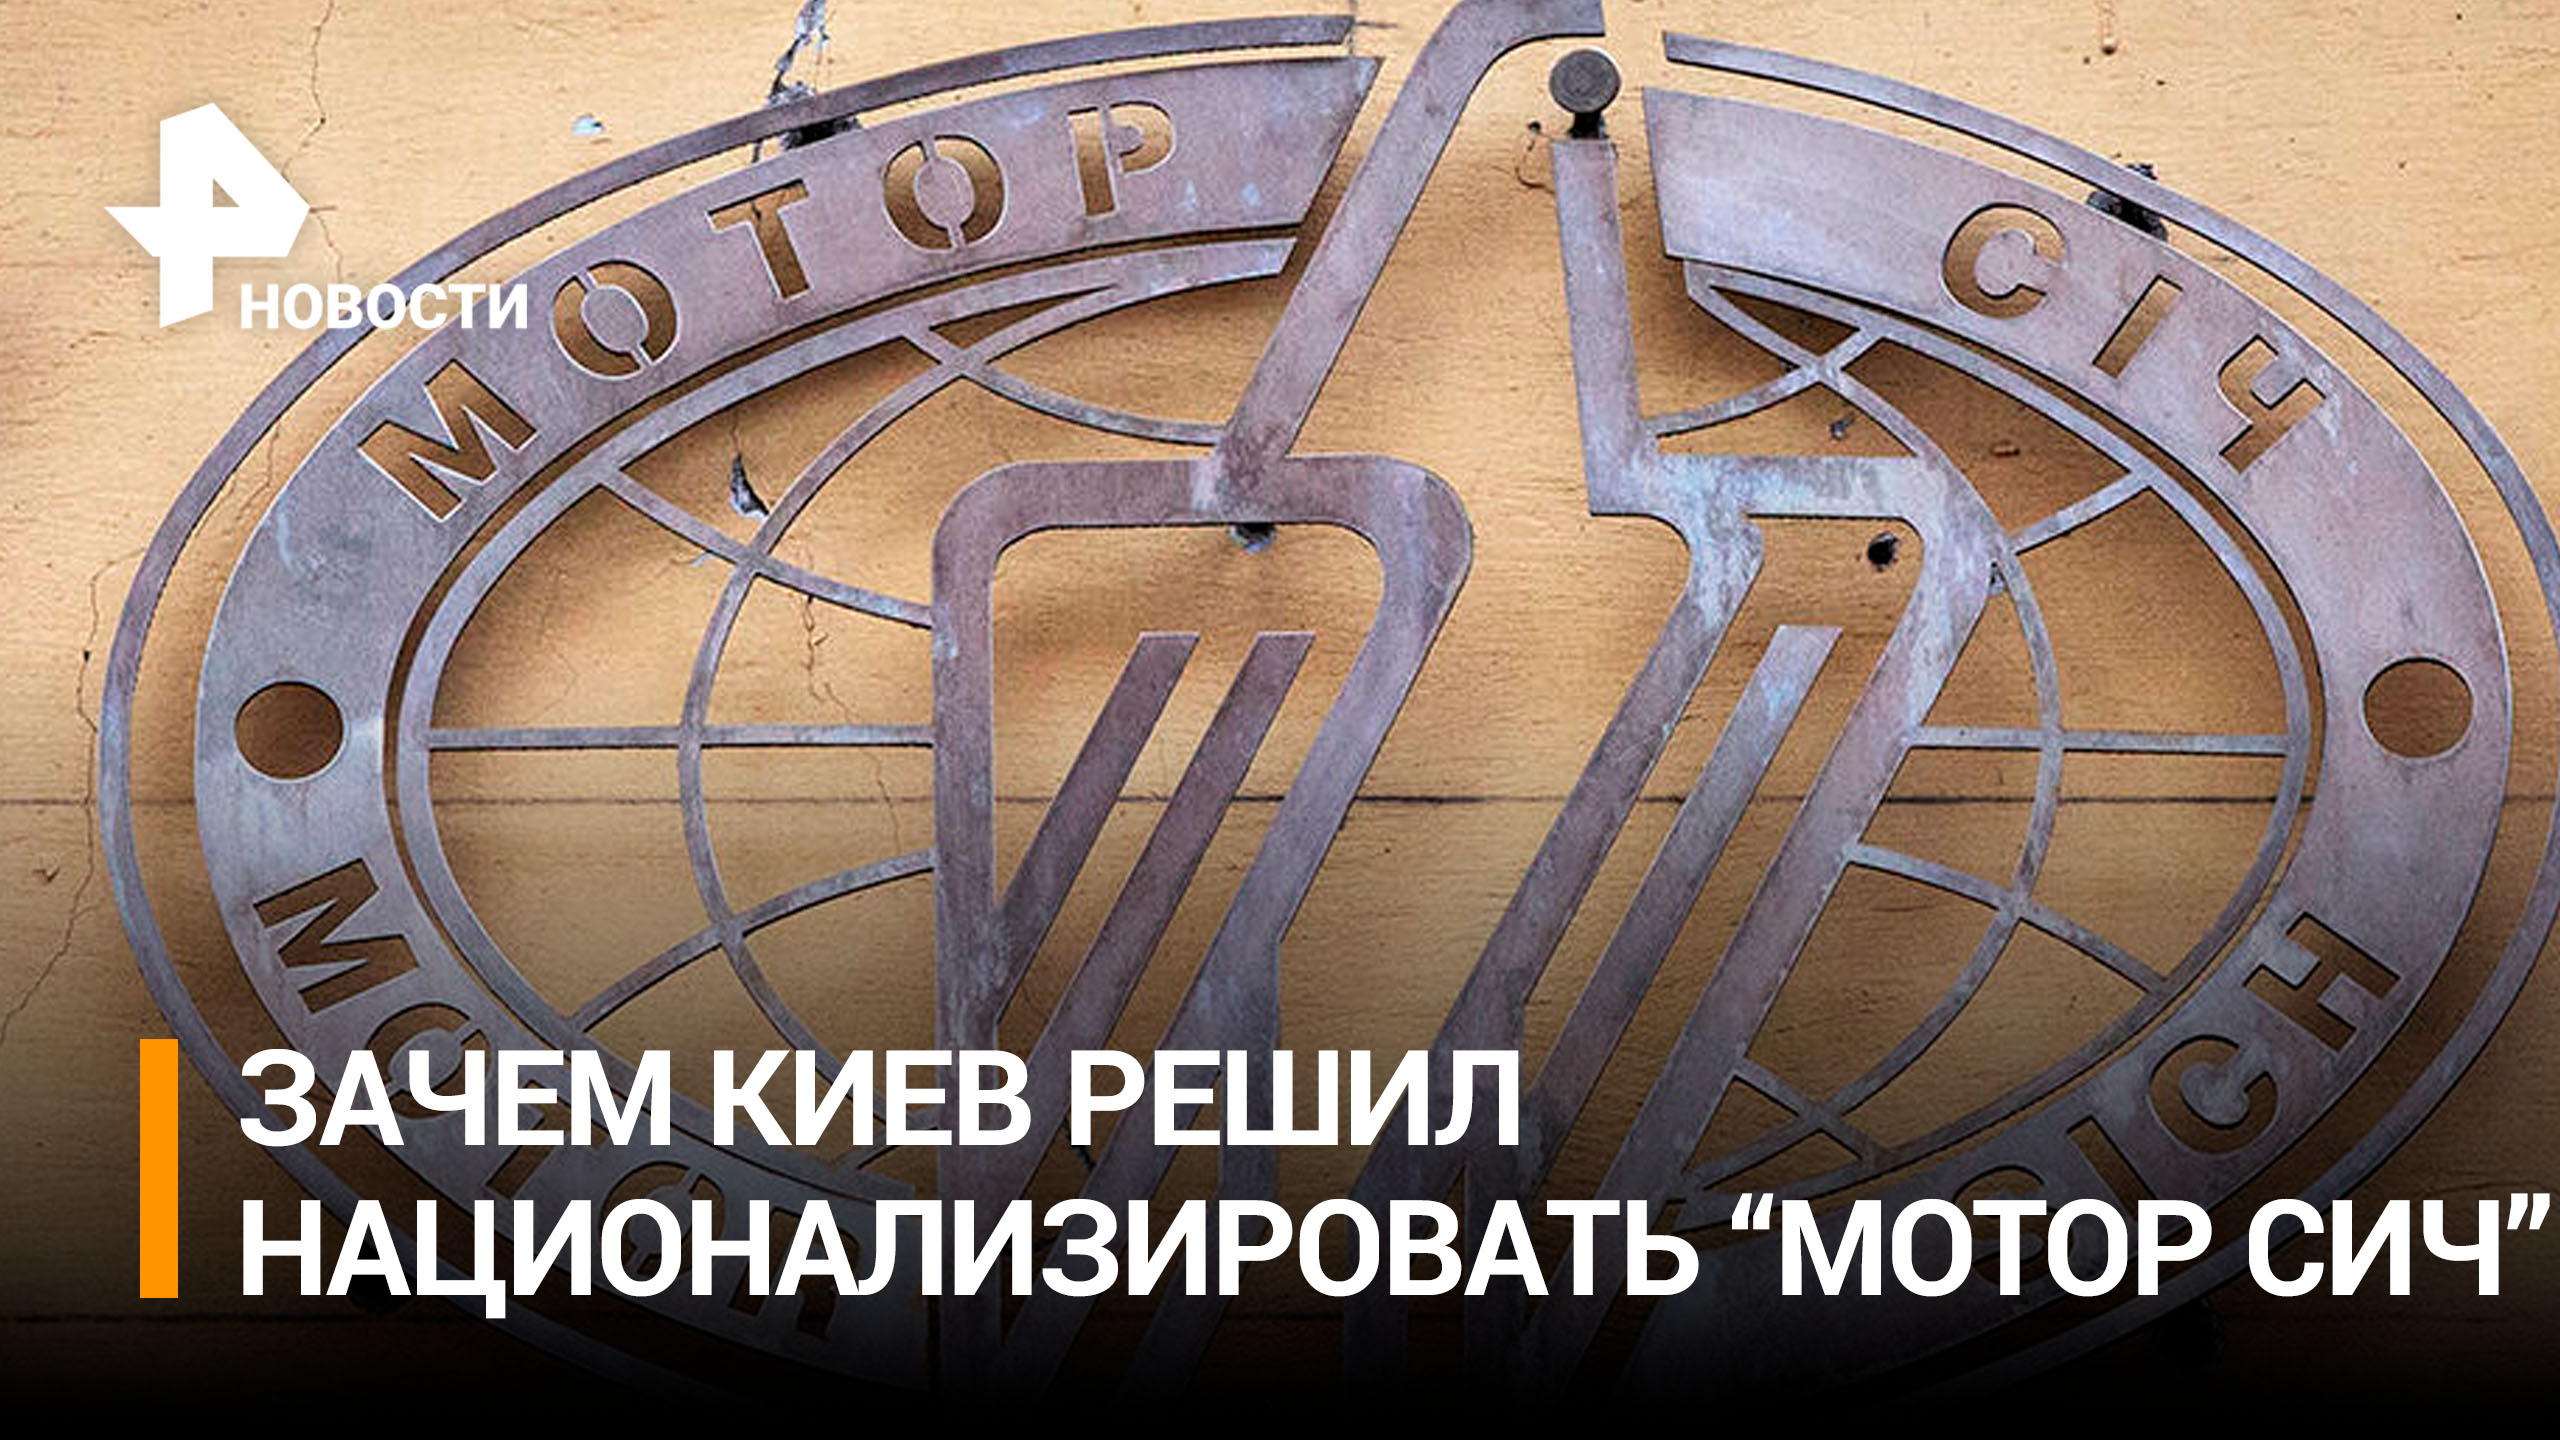 Китайские инвесторы "Мотор Сич" назвали бесстыдным поведение Украины